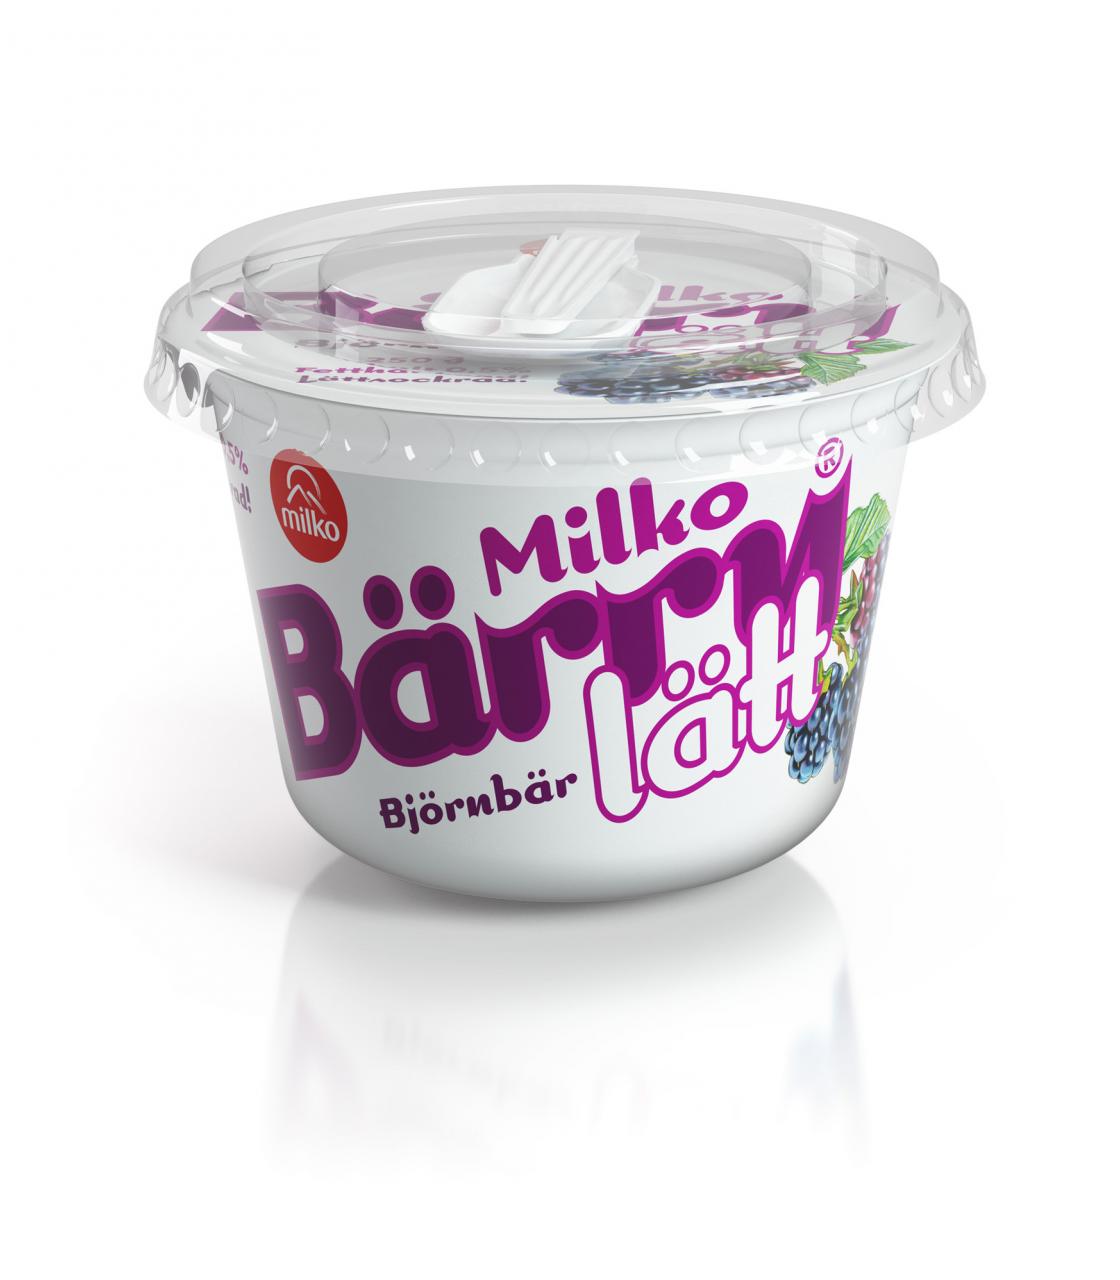 Milko bärry lätt yoghurt packshot